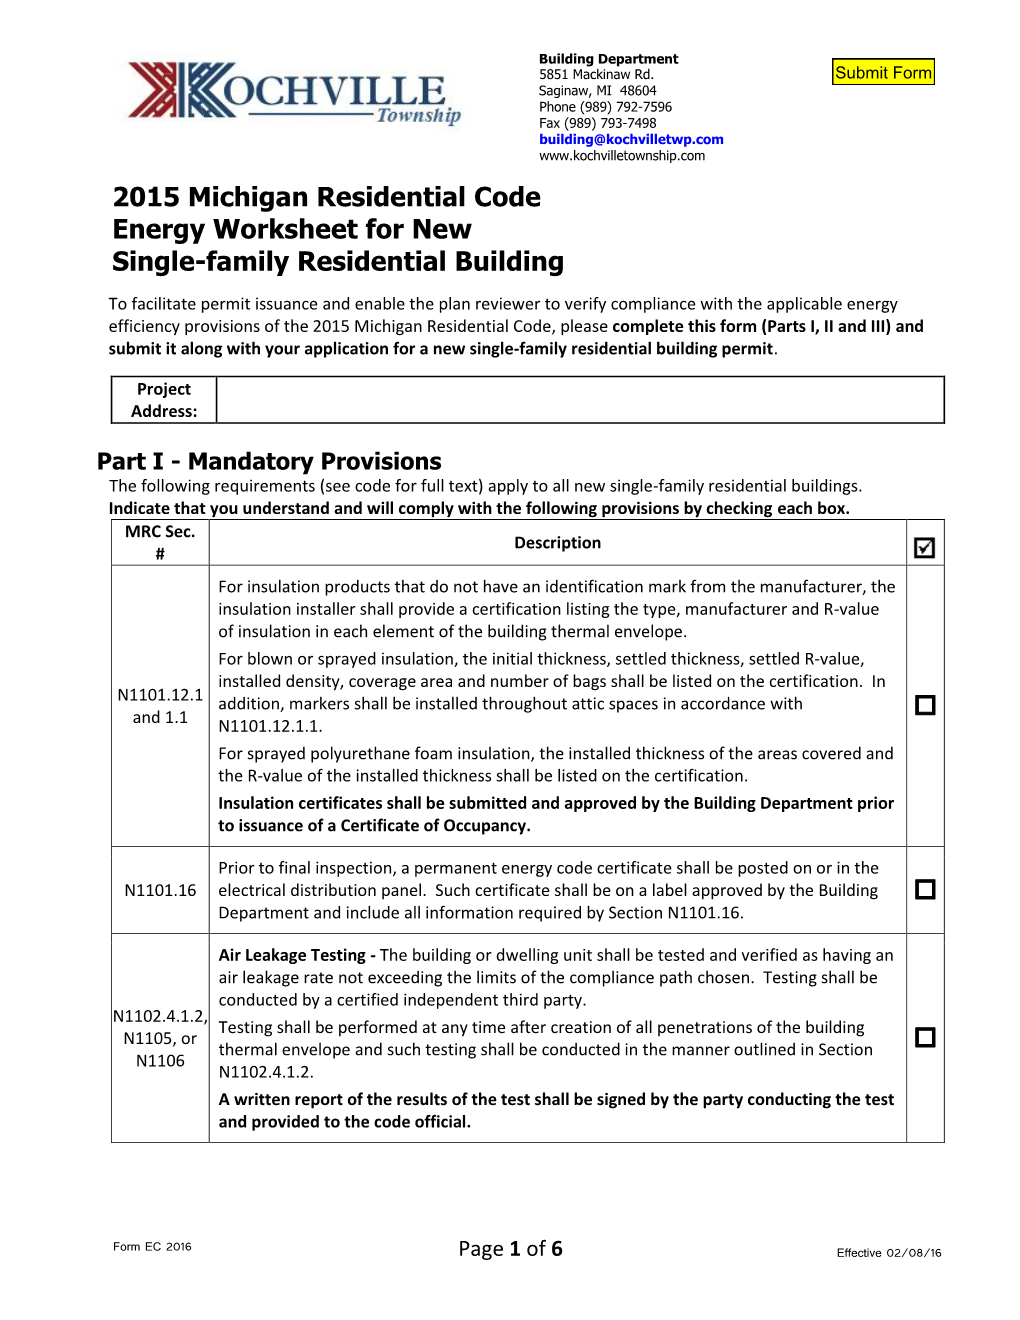 2015 MI Res Code Energy Worksheet – Single Family Residential